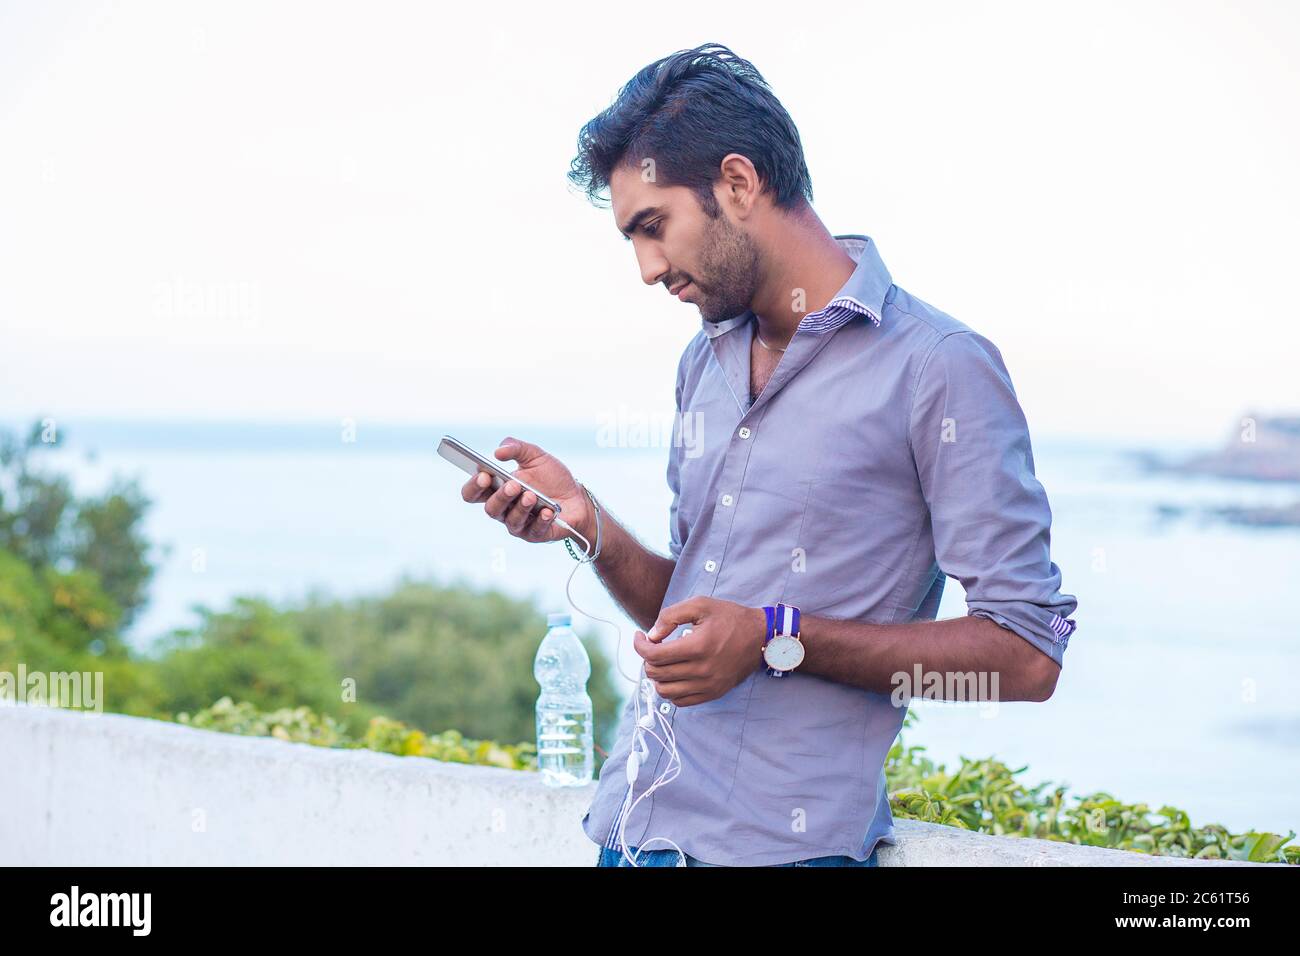 Profilo laterale di un uomo furioso che guarda le app su smartphone isolato all'aperto, sulla natura, mare su sfondo Foto Stock